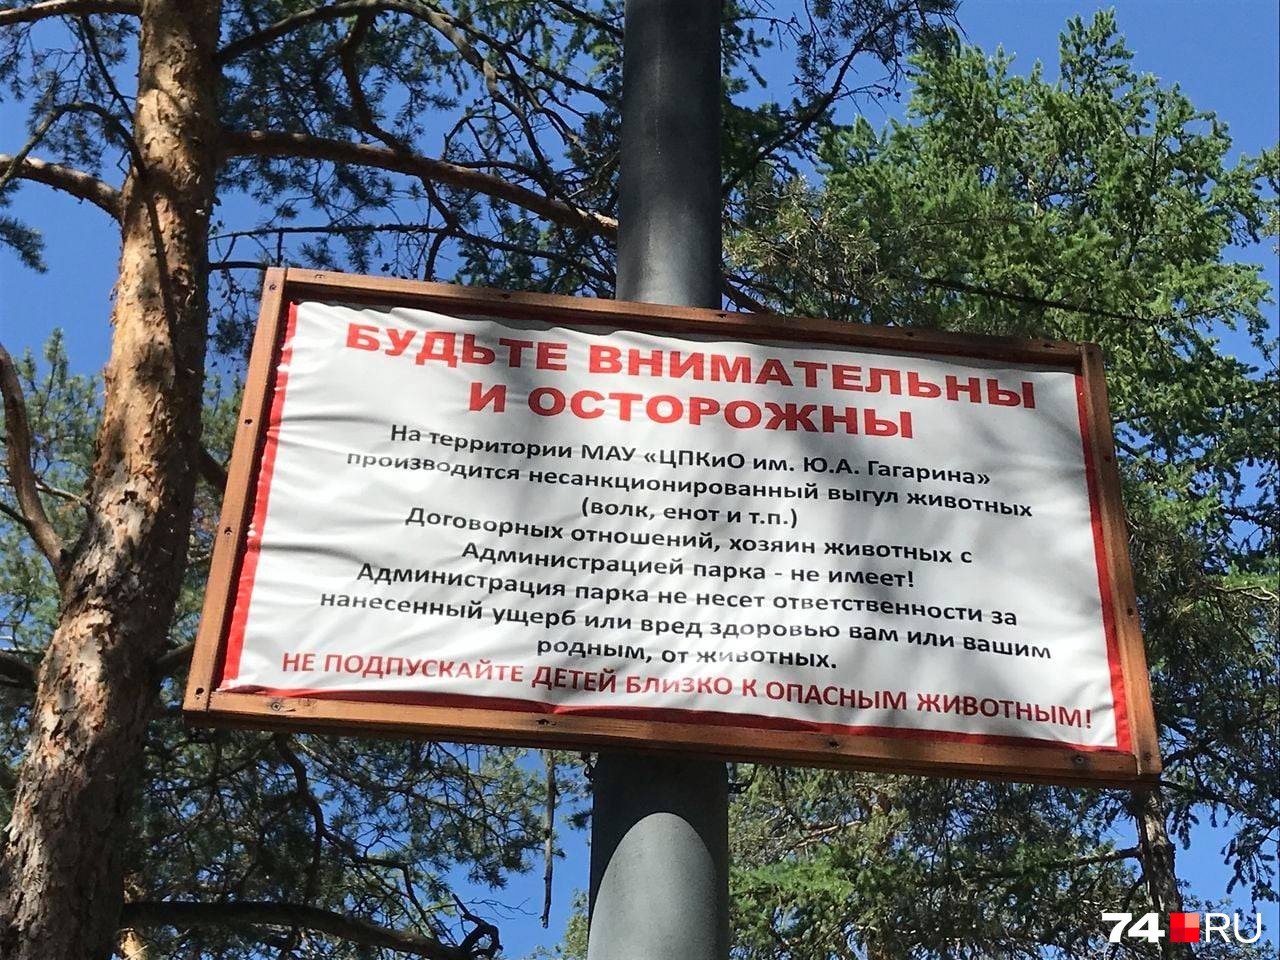 Сергей Панасенко — неуправляемая сила, поэтому вместо того, чтобы запретить ему появляться с животными в парке Гагарина, администрация повесила вот такое объявление